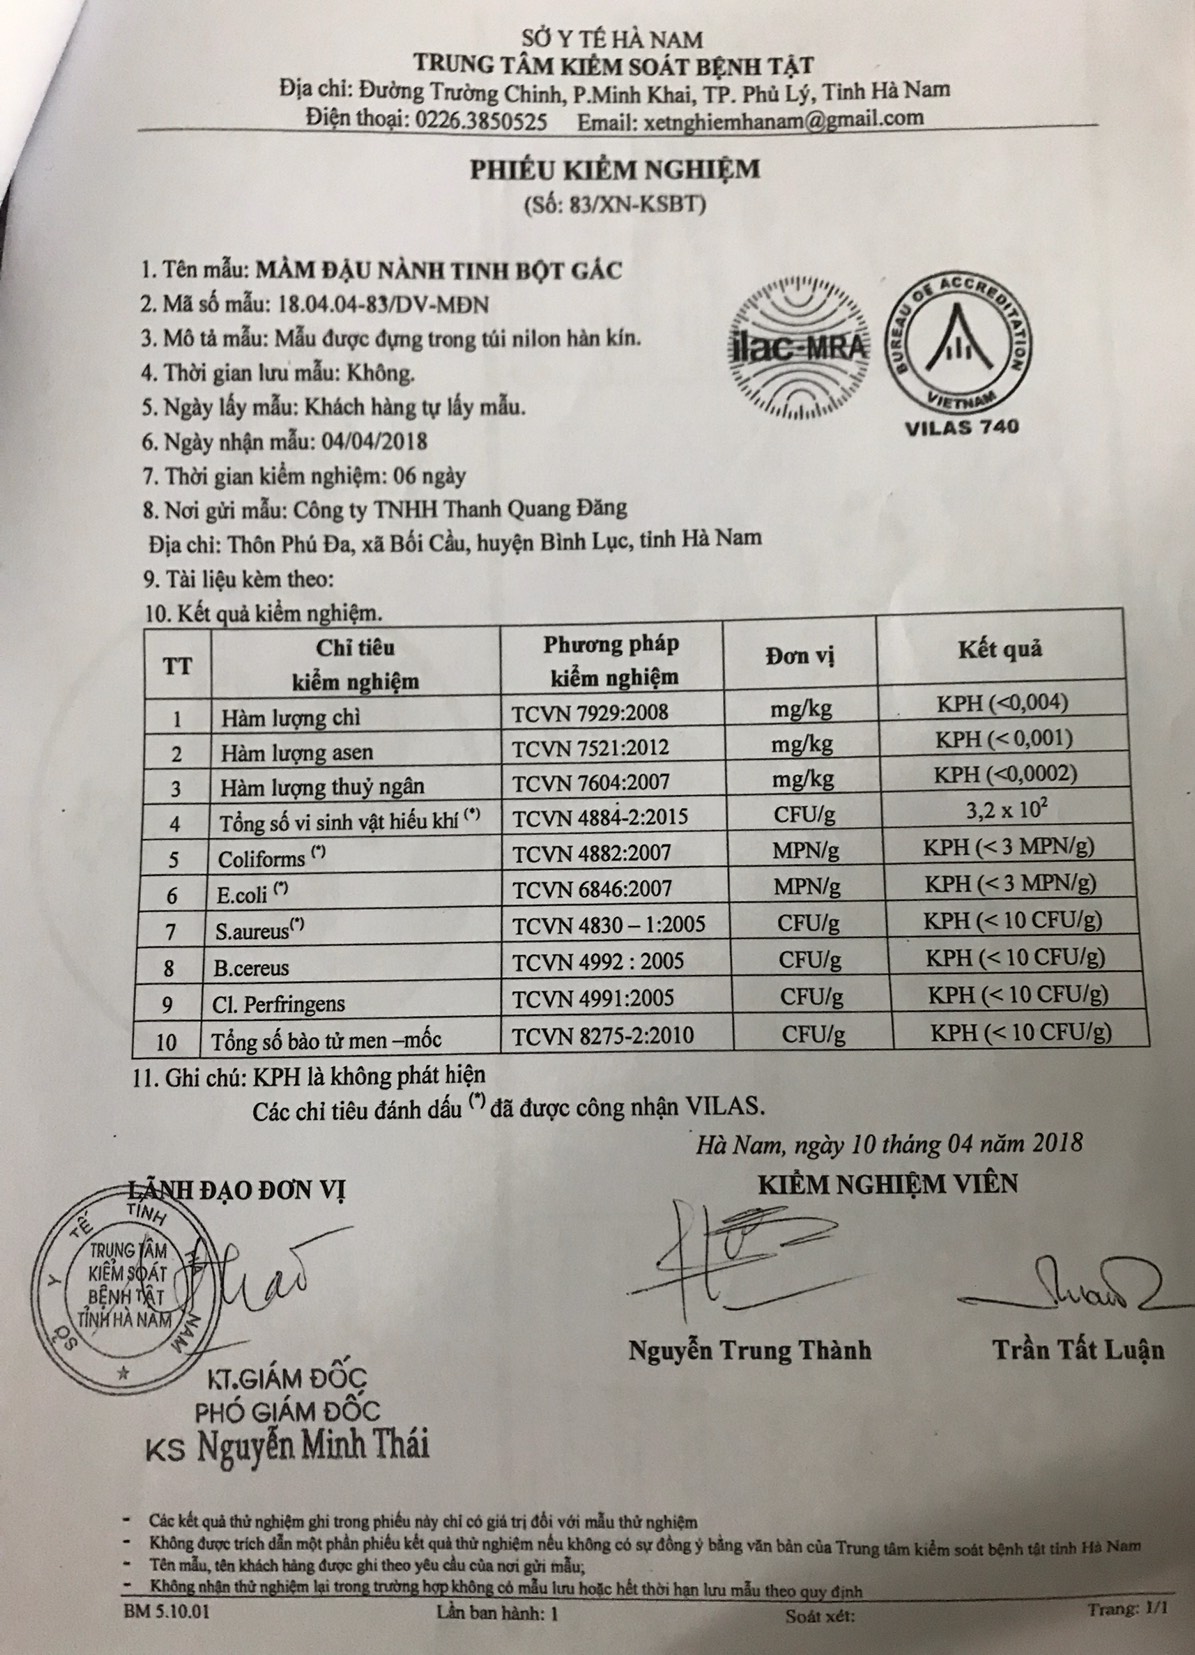 Công ty TNHH Thanh Quang Đăng chỉ gửi duy nhất phiếu kiểm nghiệm Mần đầu nành tinh bột gấc cho Chi cục An toàn vệ sinh Thực phẩm tỉnh Hà Nam